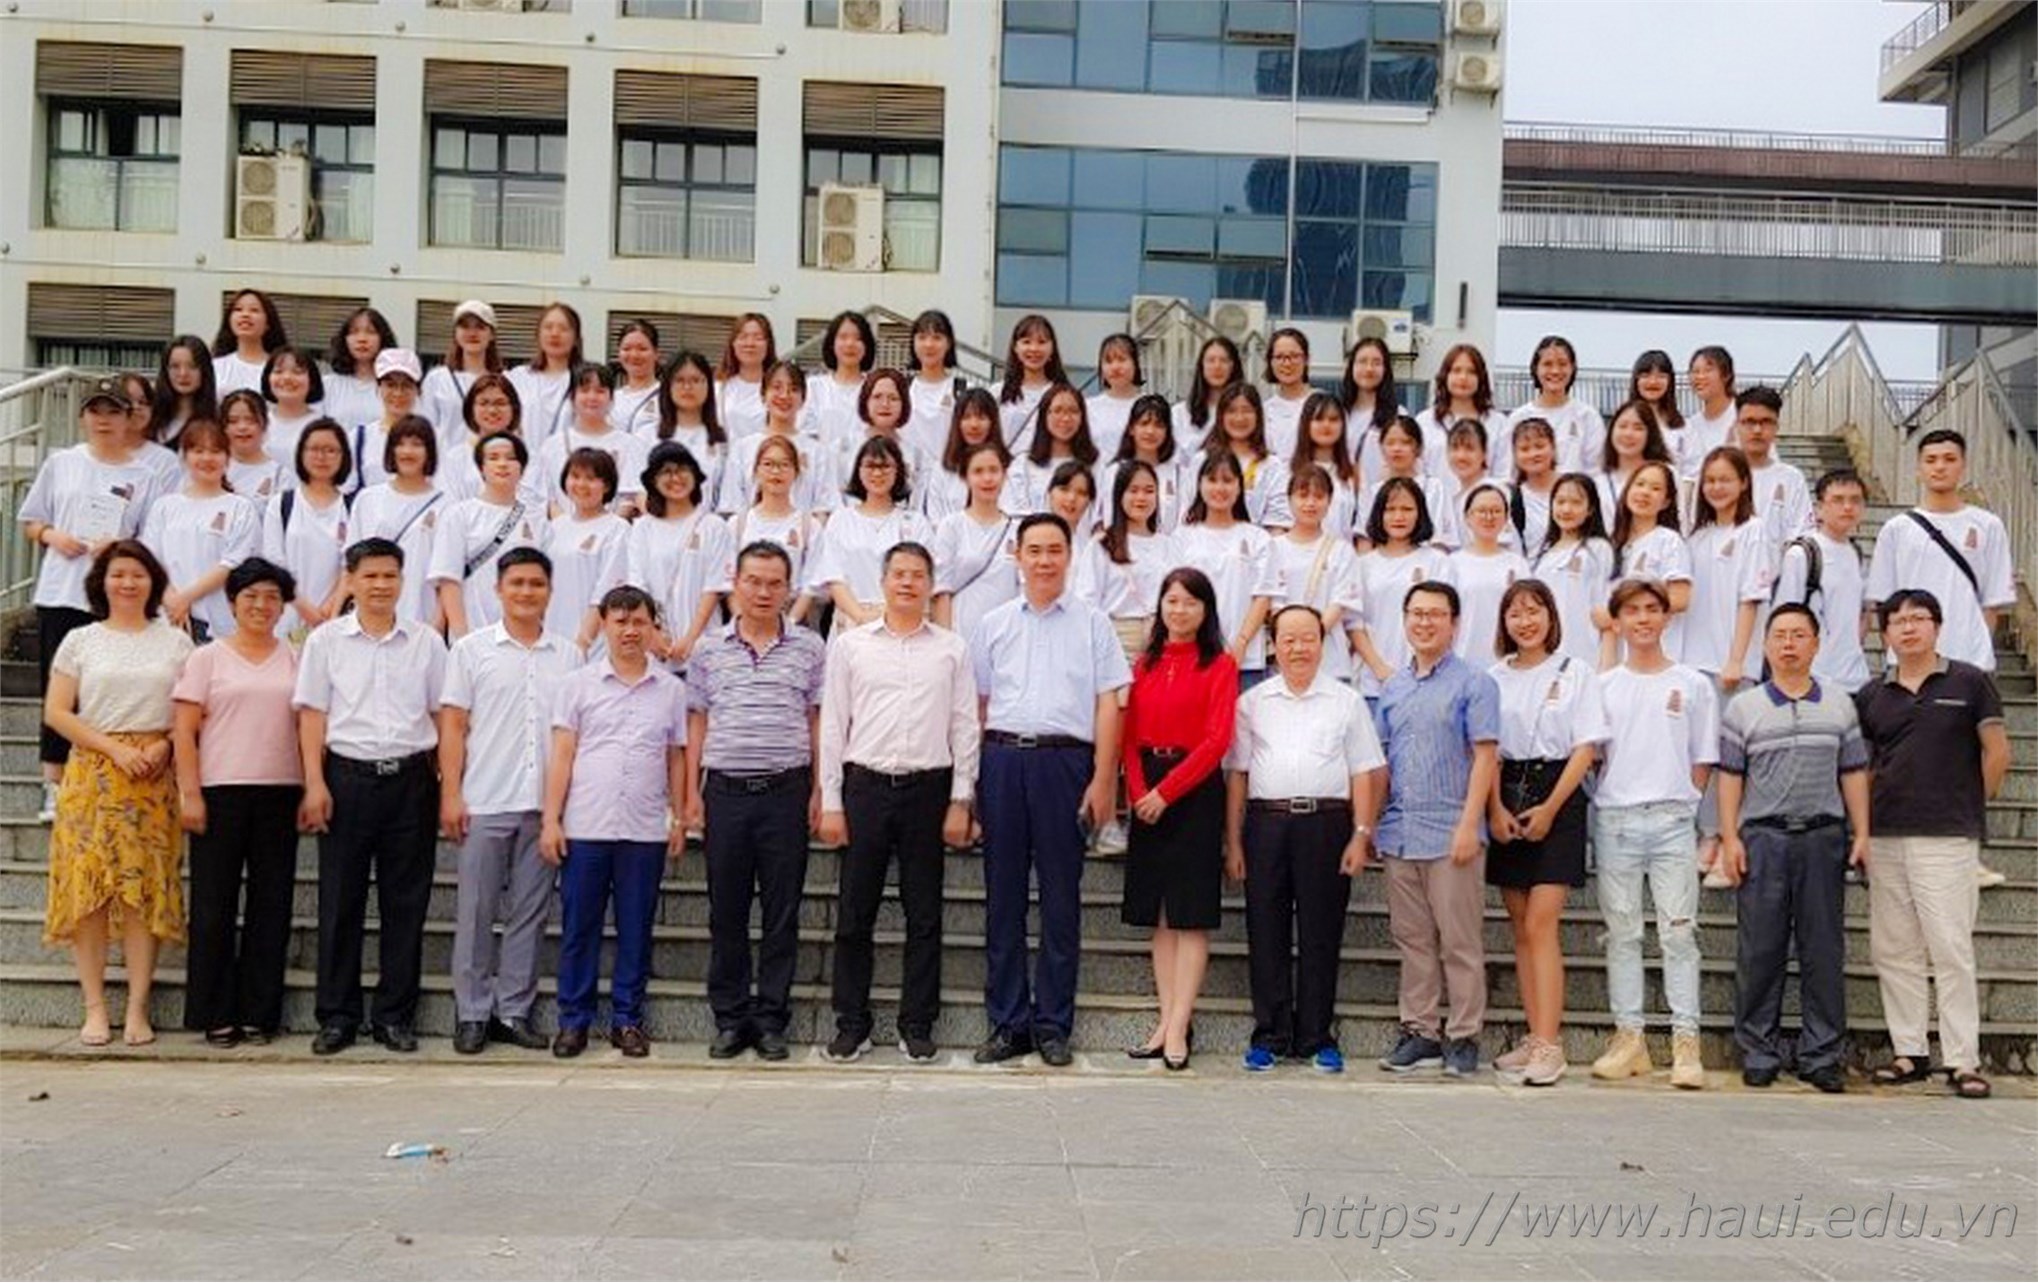 Chương trình trao đổi sinh viên giữa Đại học Công nghiệp Hà Nội và Đại học Khoa học Kỹ thuật Quảng Tây, Trung Quốc